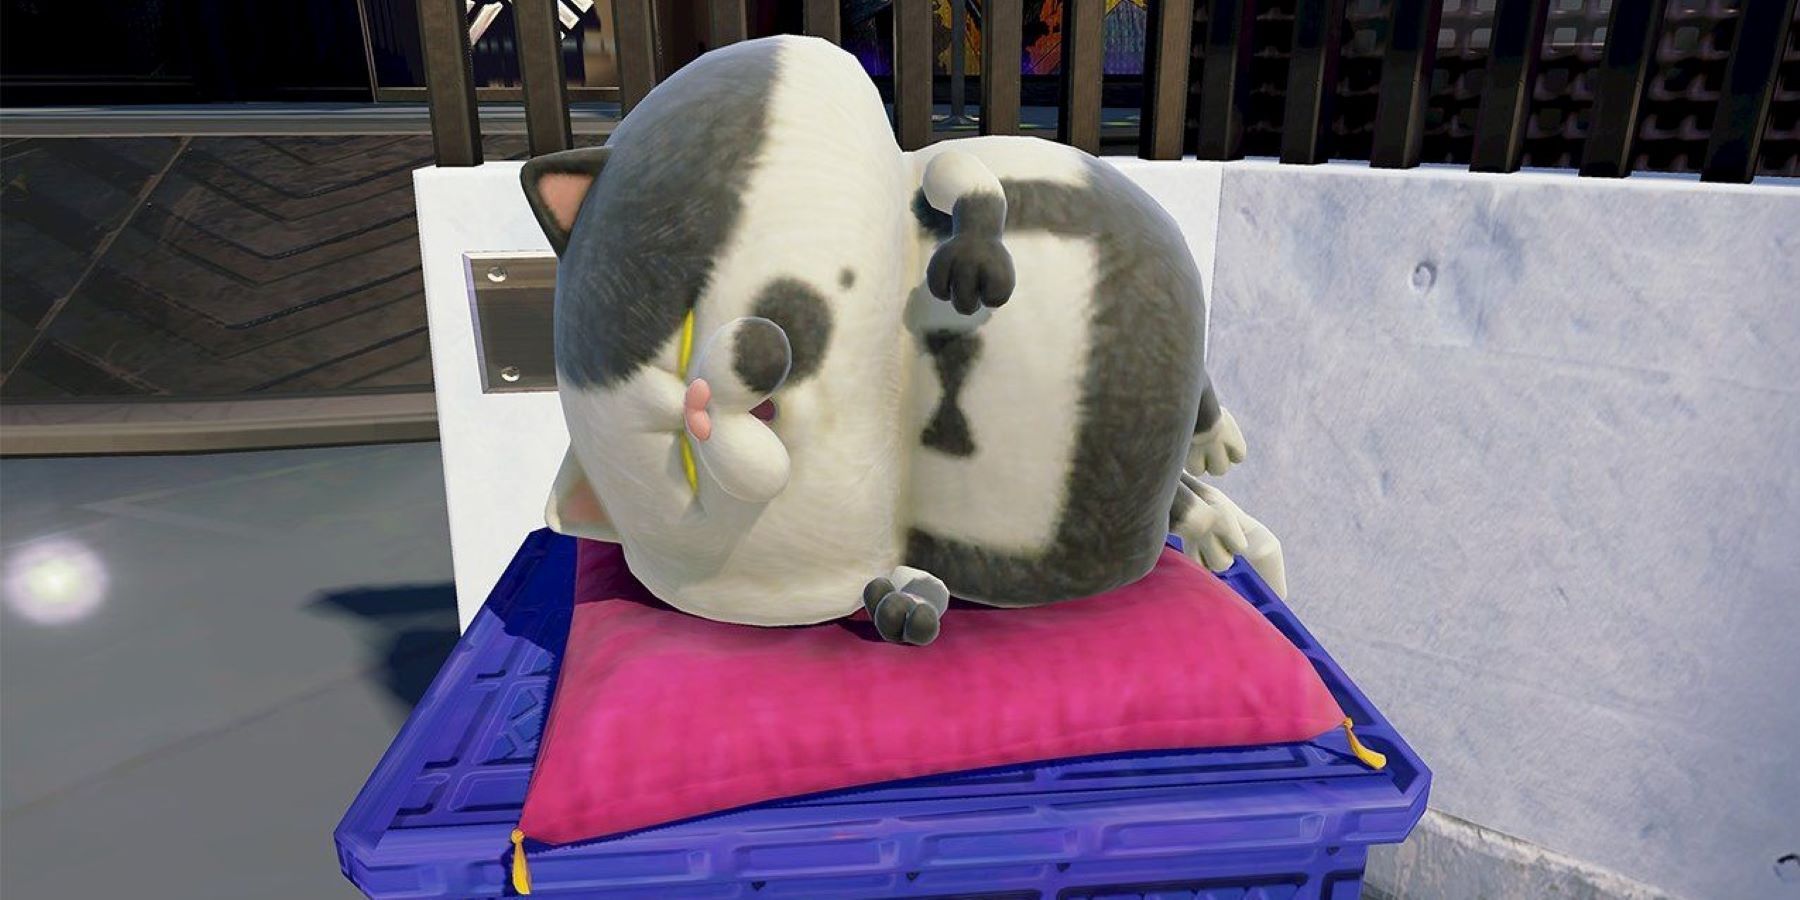 Splatoon's Judd sleeping on a pillow